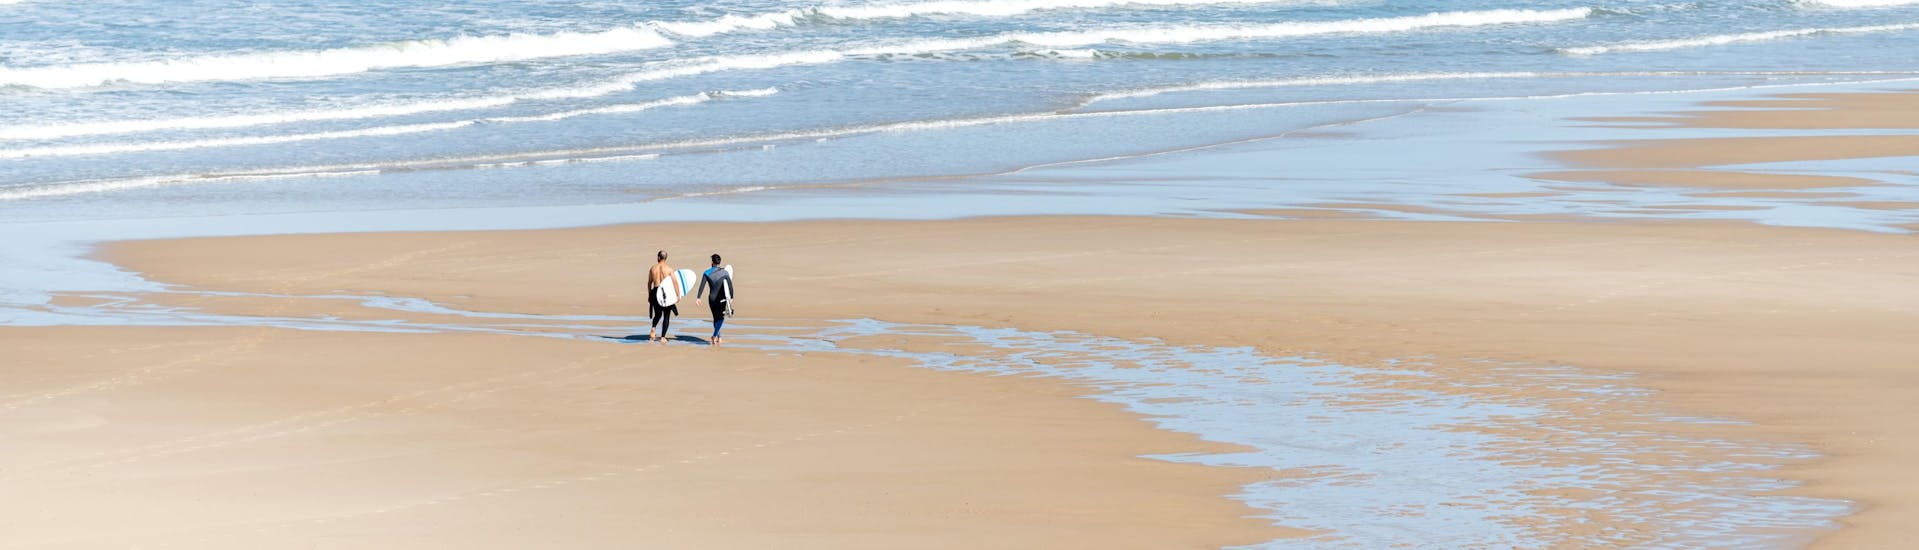 Deux hommes marchent sur la plage de Biscarosse avec leur planche de surf sous le bras, où se déroulent de nombreux cours de surf.